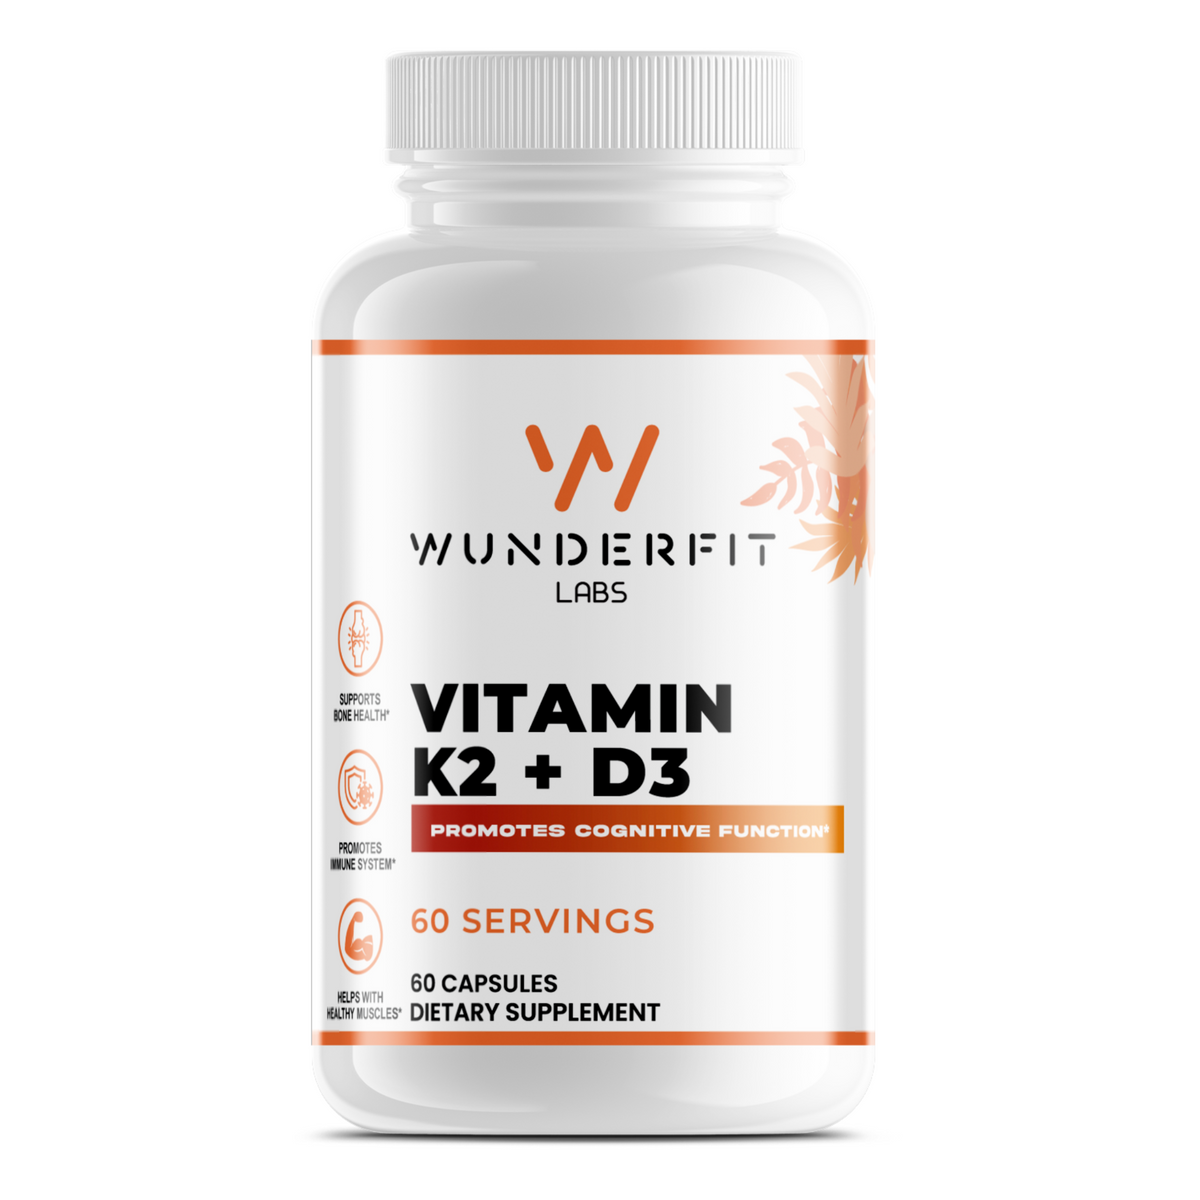 Vitamin K2 + D3, Capsules, 60 Servings